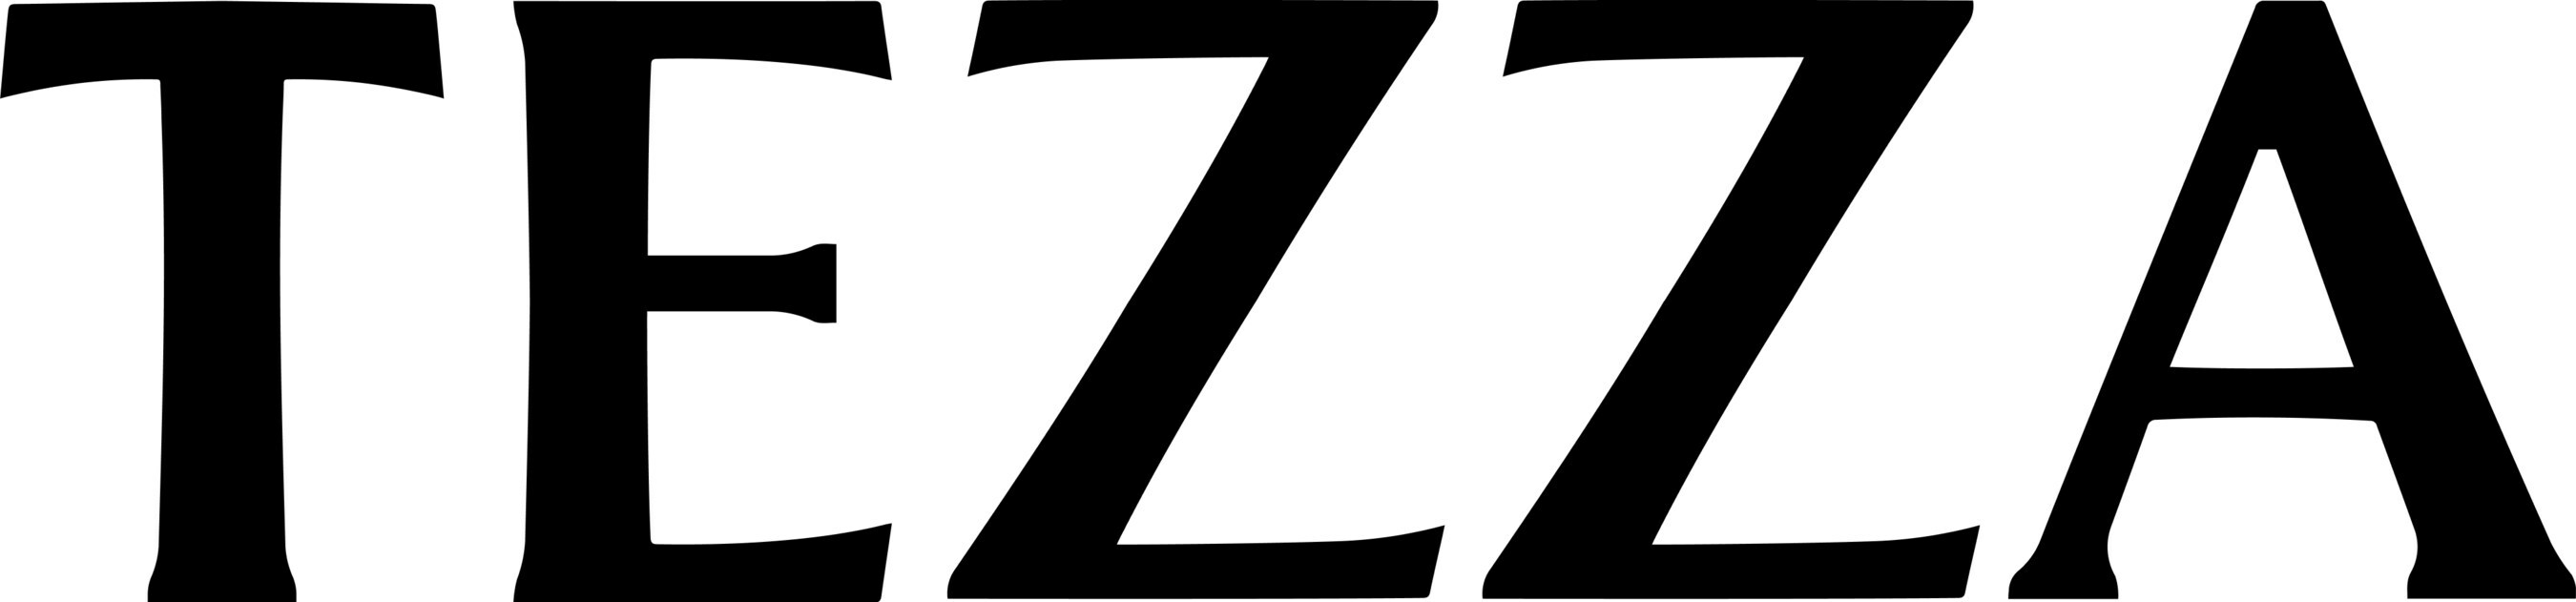 TEZZA company logo in black and white